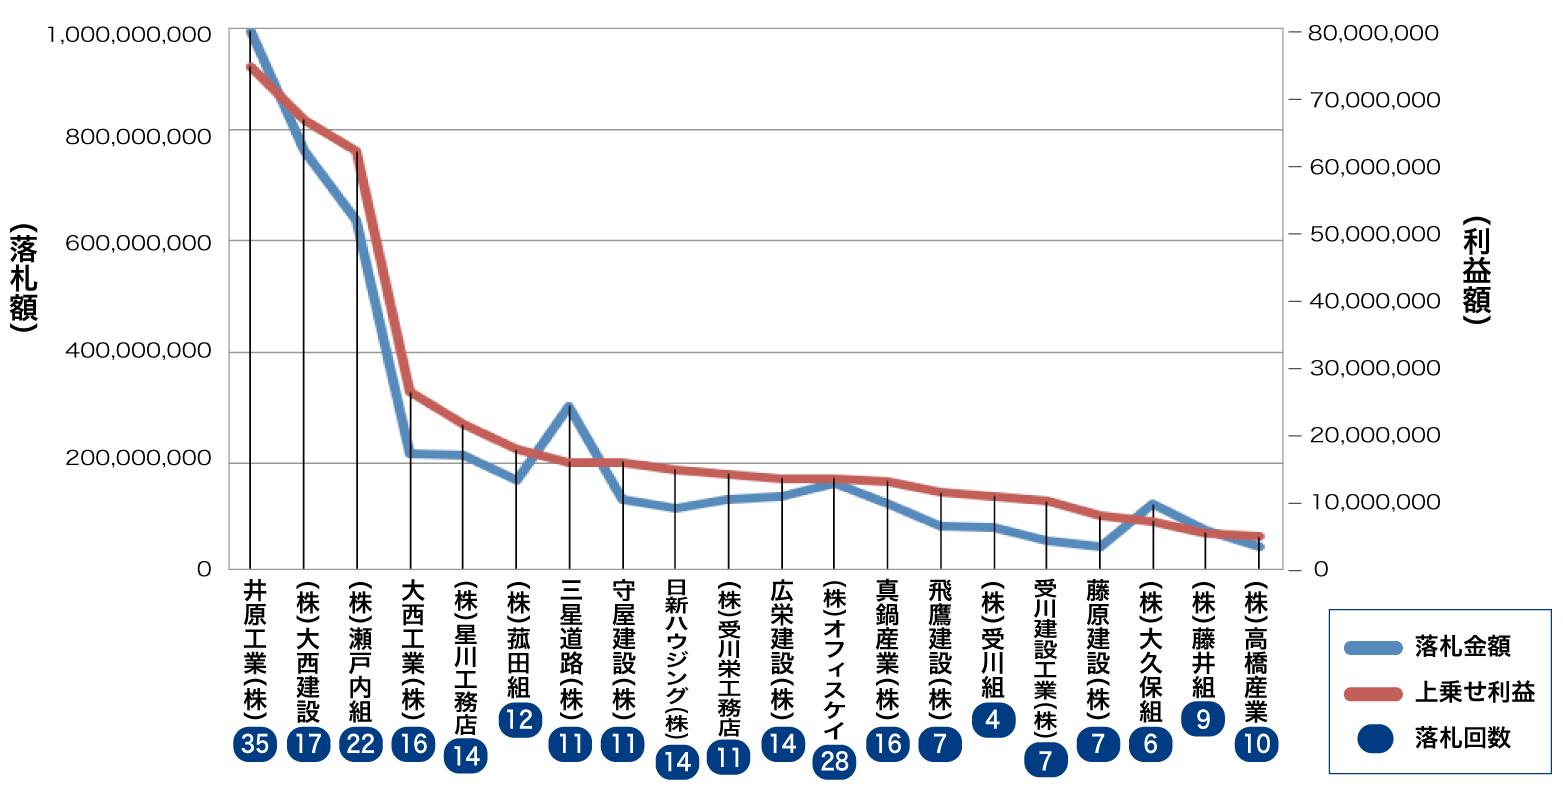 三島地区の会社別落札金額と利益額と落札回数